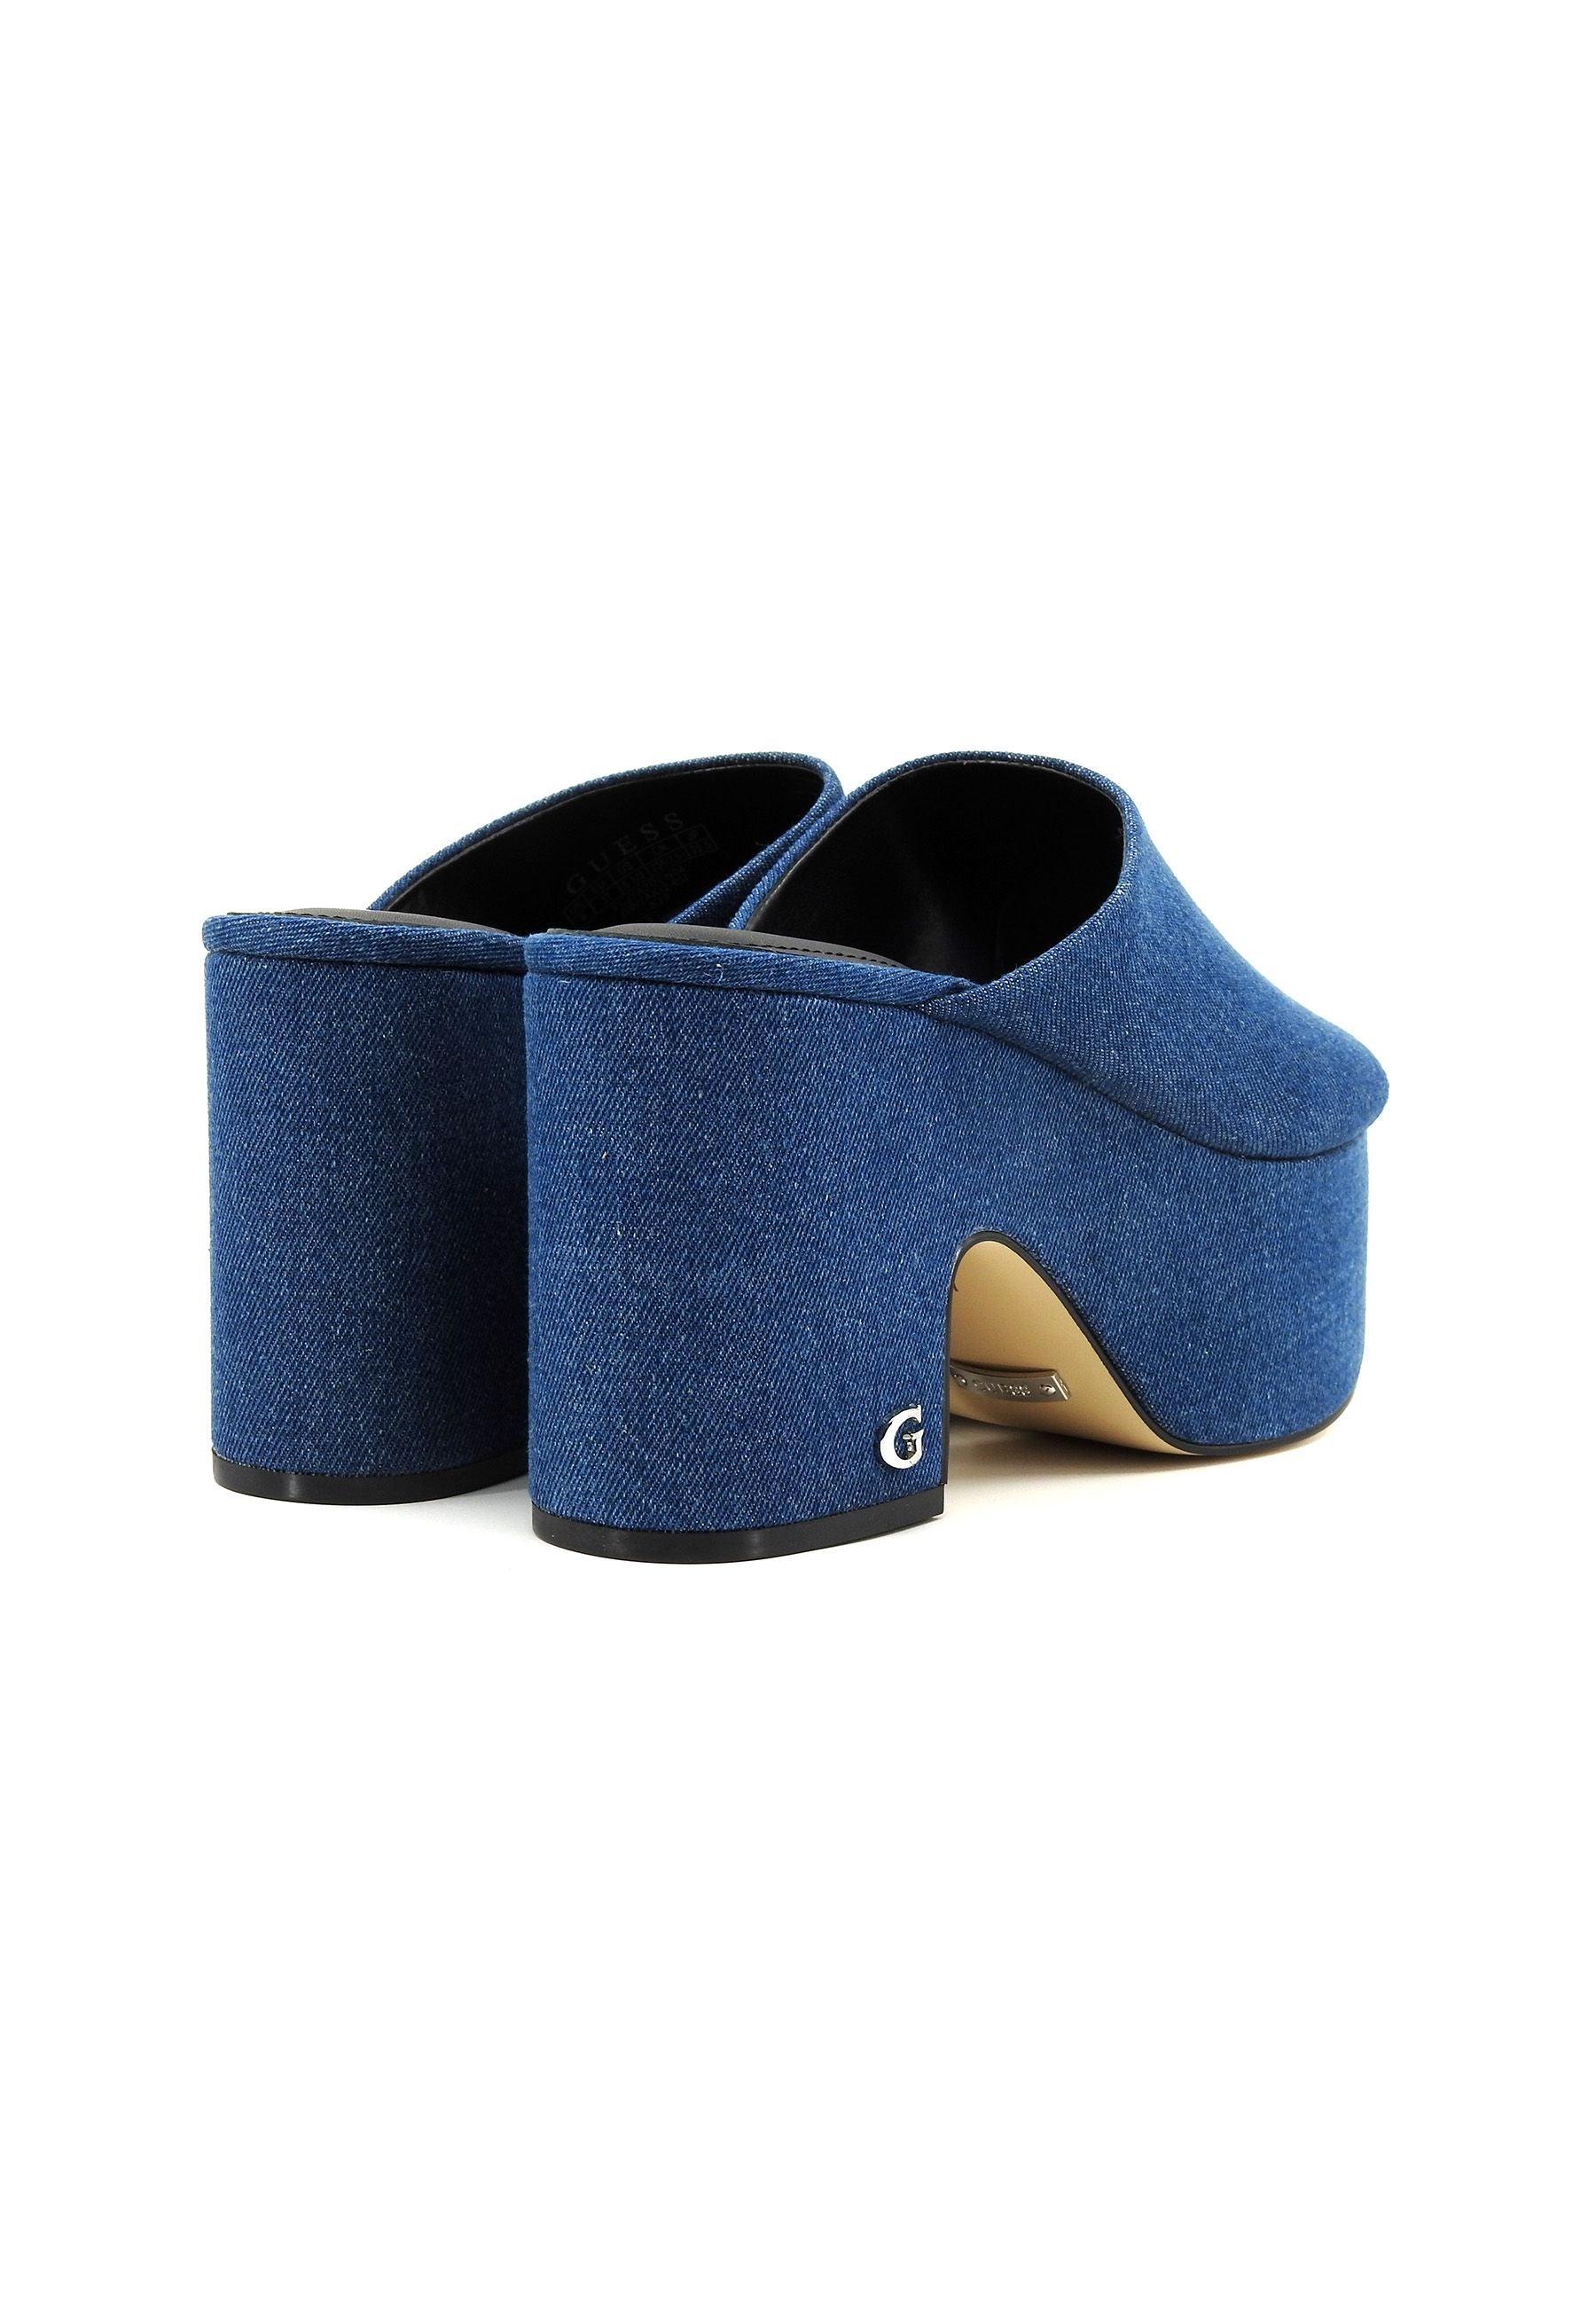 GUESS Sandalo Zoccolo Donna Blue FLJYA2DEN04 - Sandrini Calzature e Abbigliamento